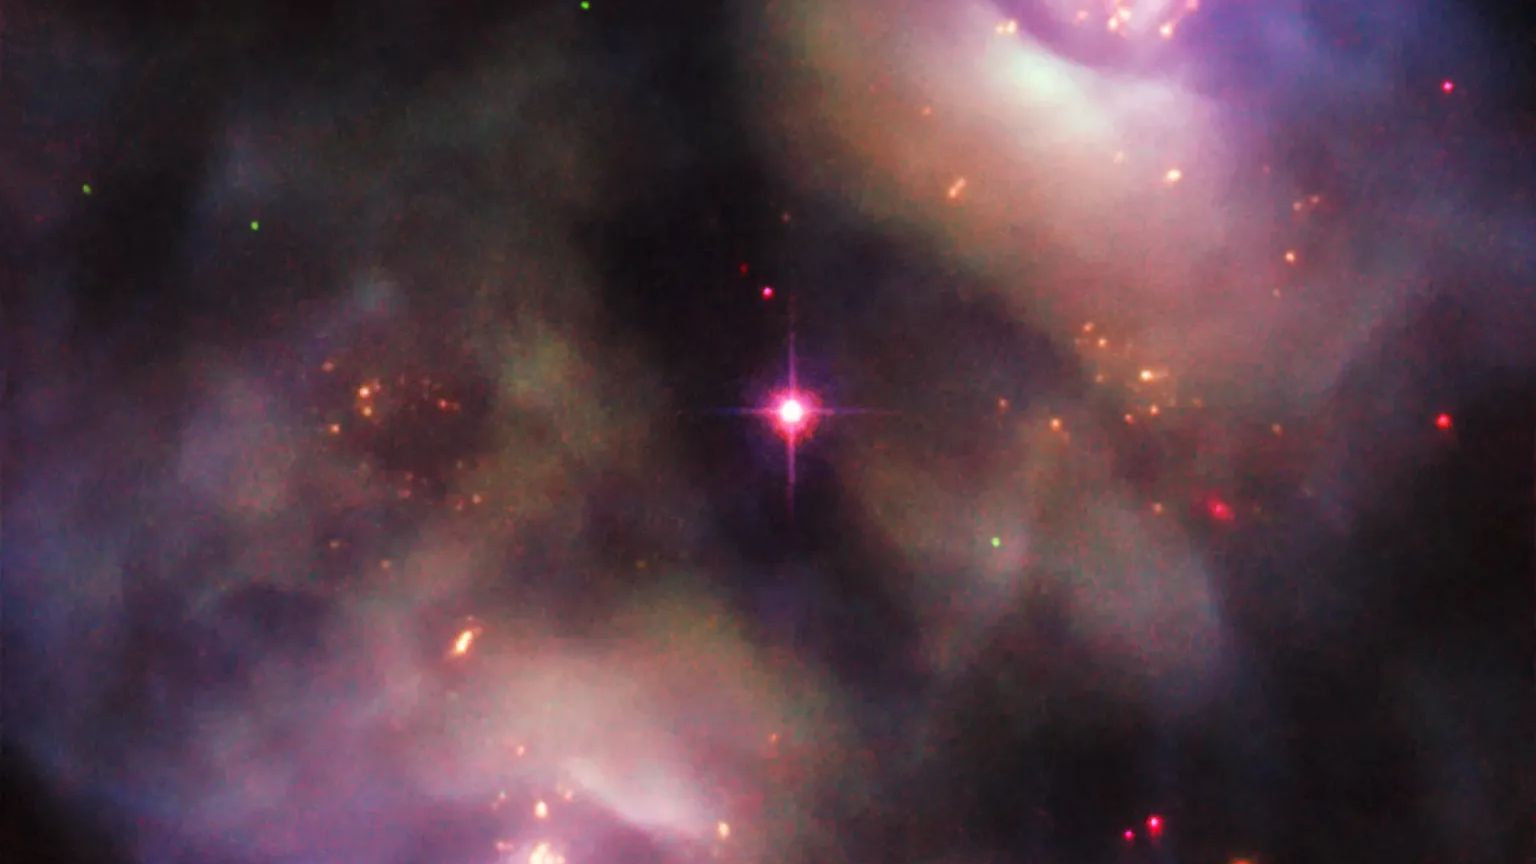 Esta imagem obtida com o Telescópio Espacial Hubble mostra uma cena escura e sombria na Constelação de Gêmeos. Registados como dois objetos devido à sua estrutura lobada simétrica, NGC 2371 e NGC 2372 (ou NGC 2371/2) formam uma nebulosa planetária. Apesar do nome, tais nebulosas nada têm a ver com planetas. Este objeto formou-se quando uma estrela semelhante ao Sol atingiu o fim da sua vida, liberando seu material constituinte para o espaço. O remanescente estelar está visível como uma estrela brilhante, no centro da imagem, posicionada perfeitamente entre os dois lóbulos. Com o tempo, esses os lóbulos se dissiparão completamente e a estrela remanescente se tornará uma anã branca